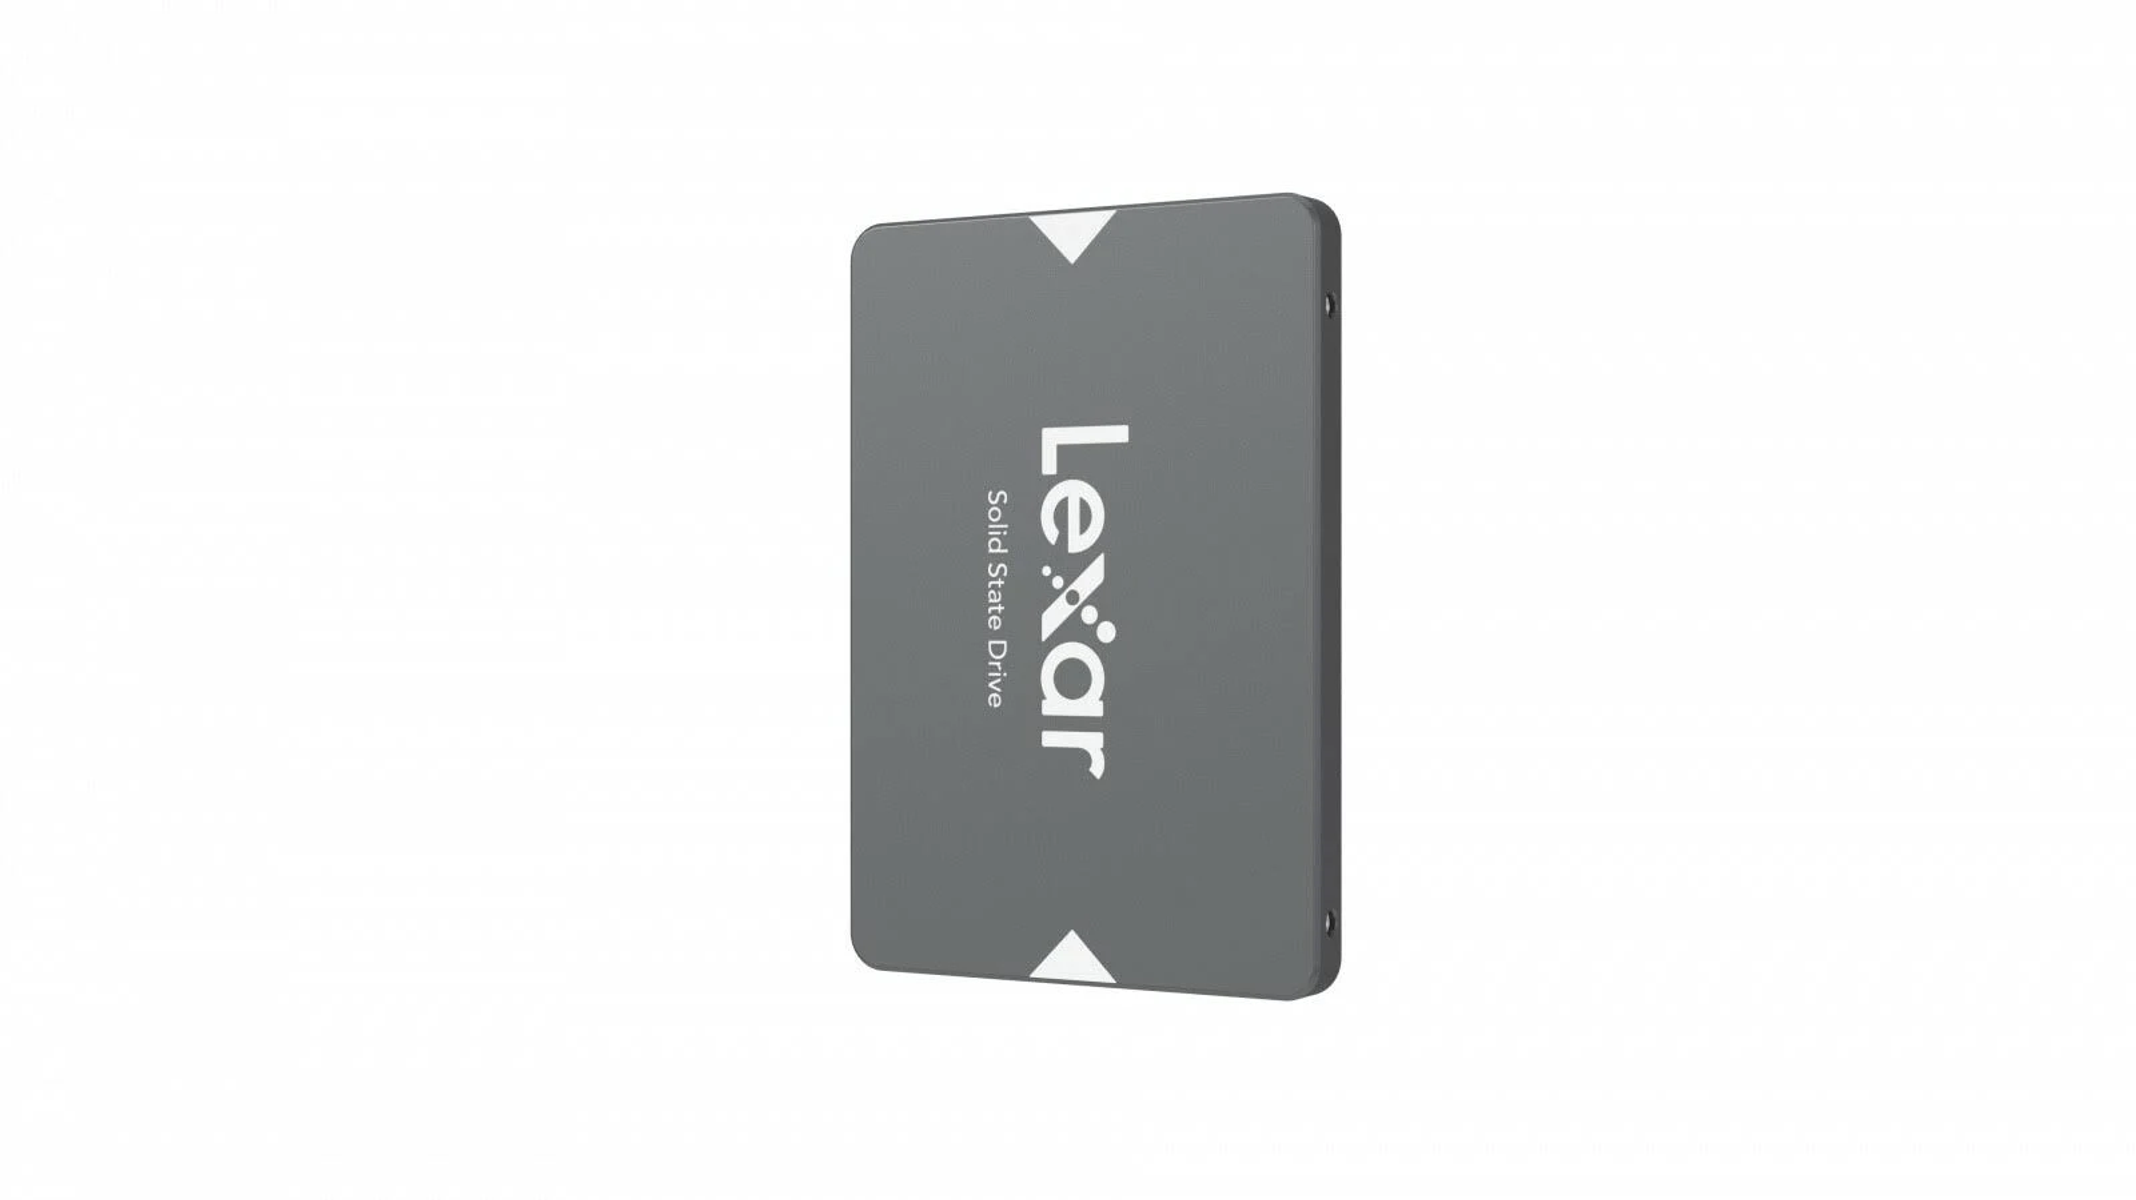 LEXAR 2 2,5 TB SSD, extern, Silber Zoll, LNS100-2TRB,